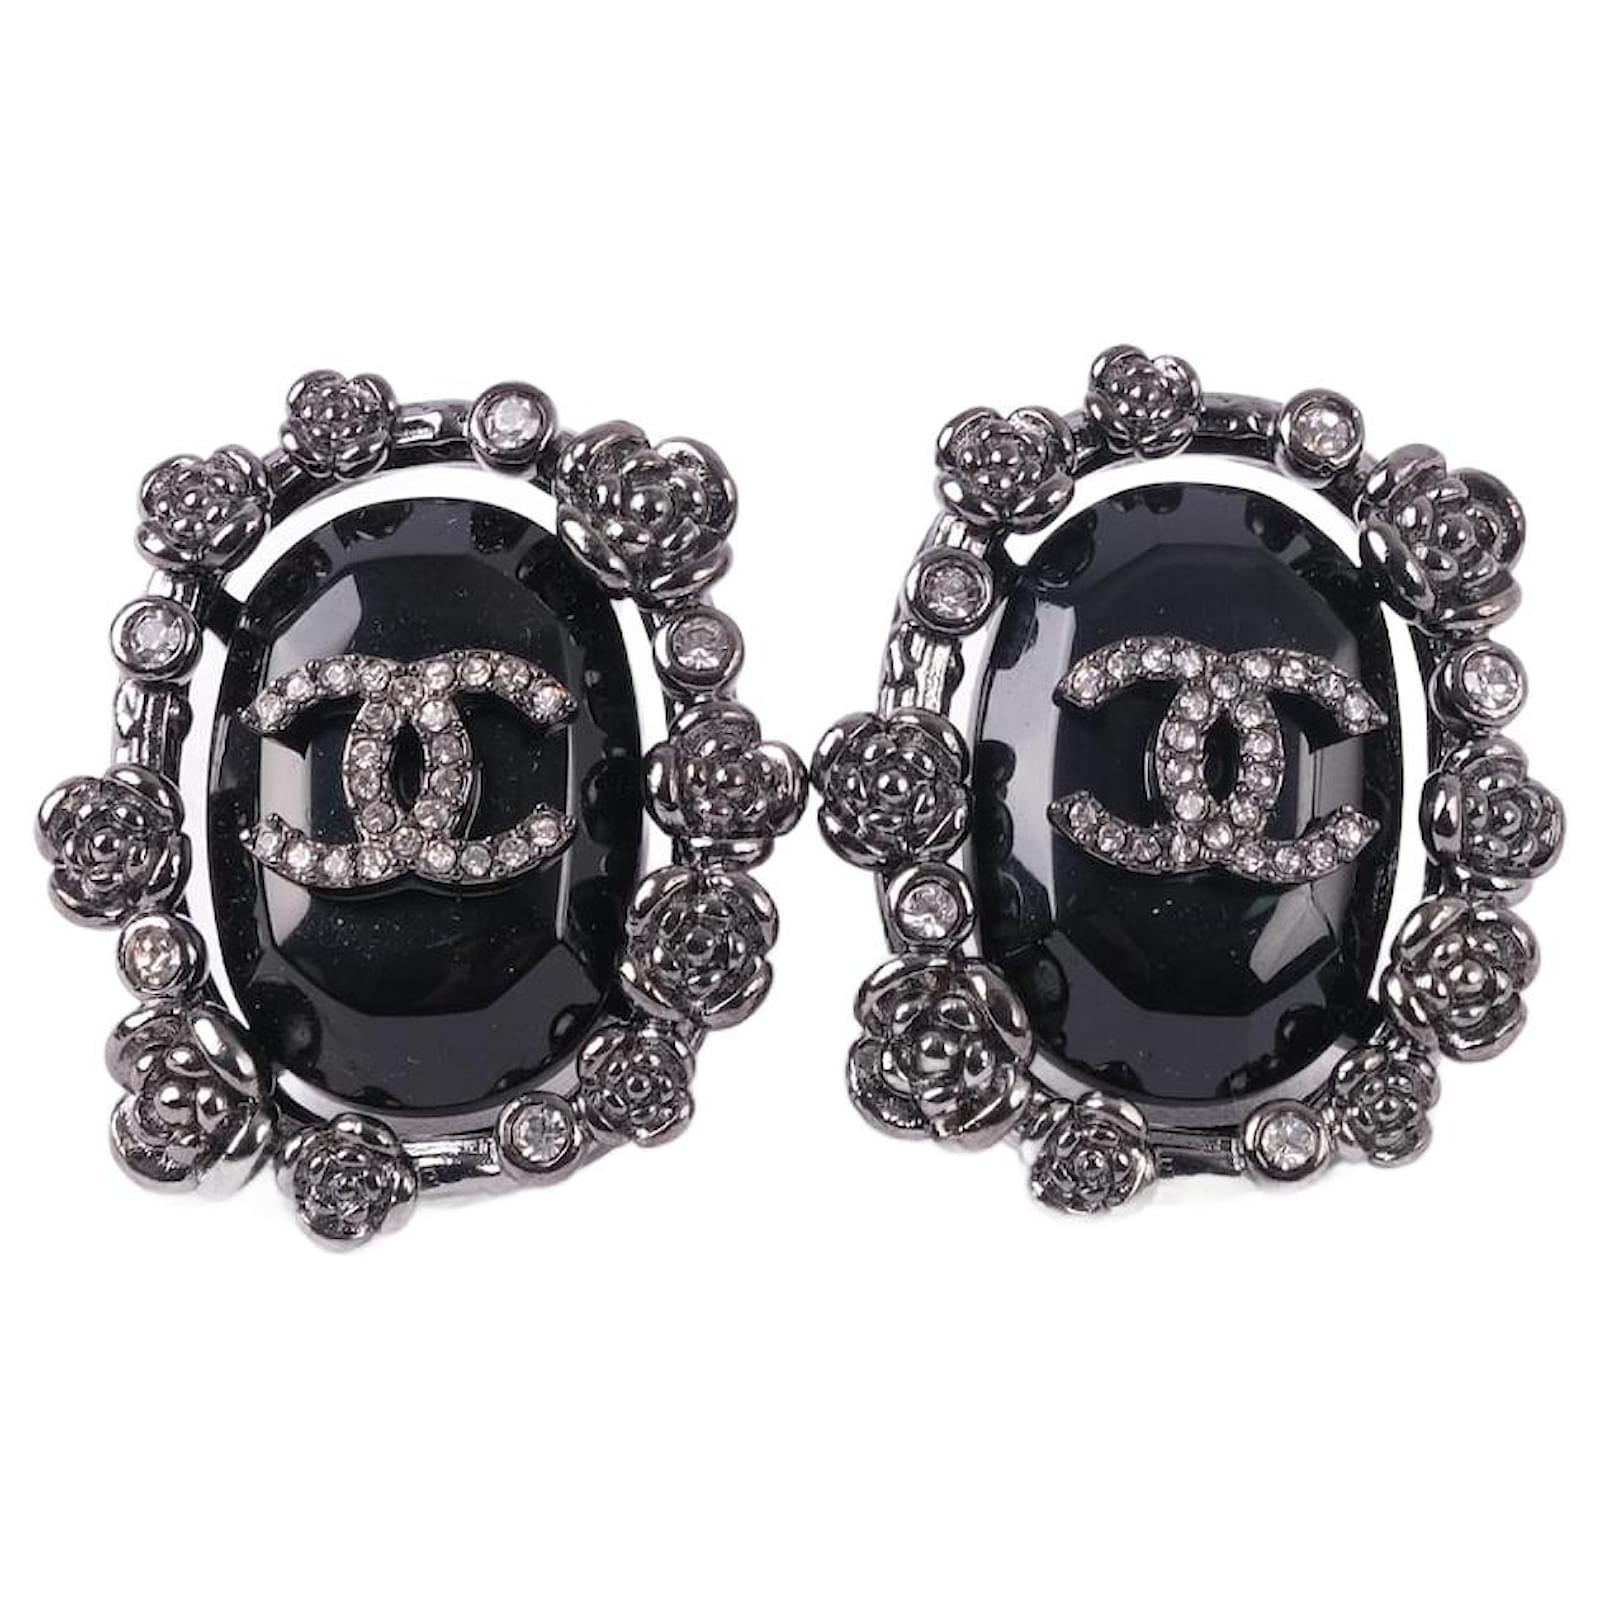 Stud earrings - Metal, resin & strass, silver, black & crystal